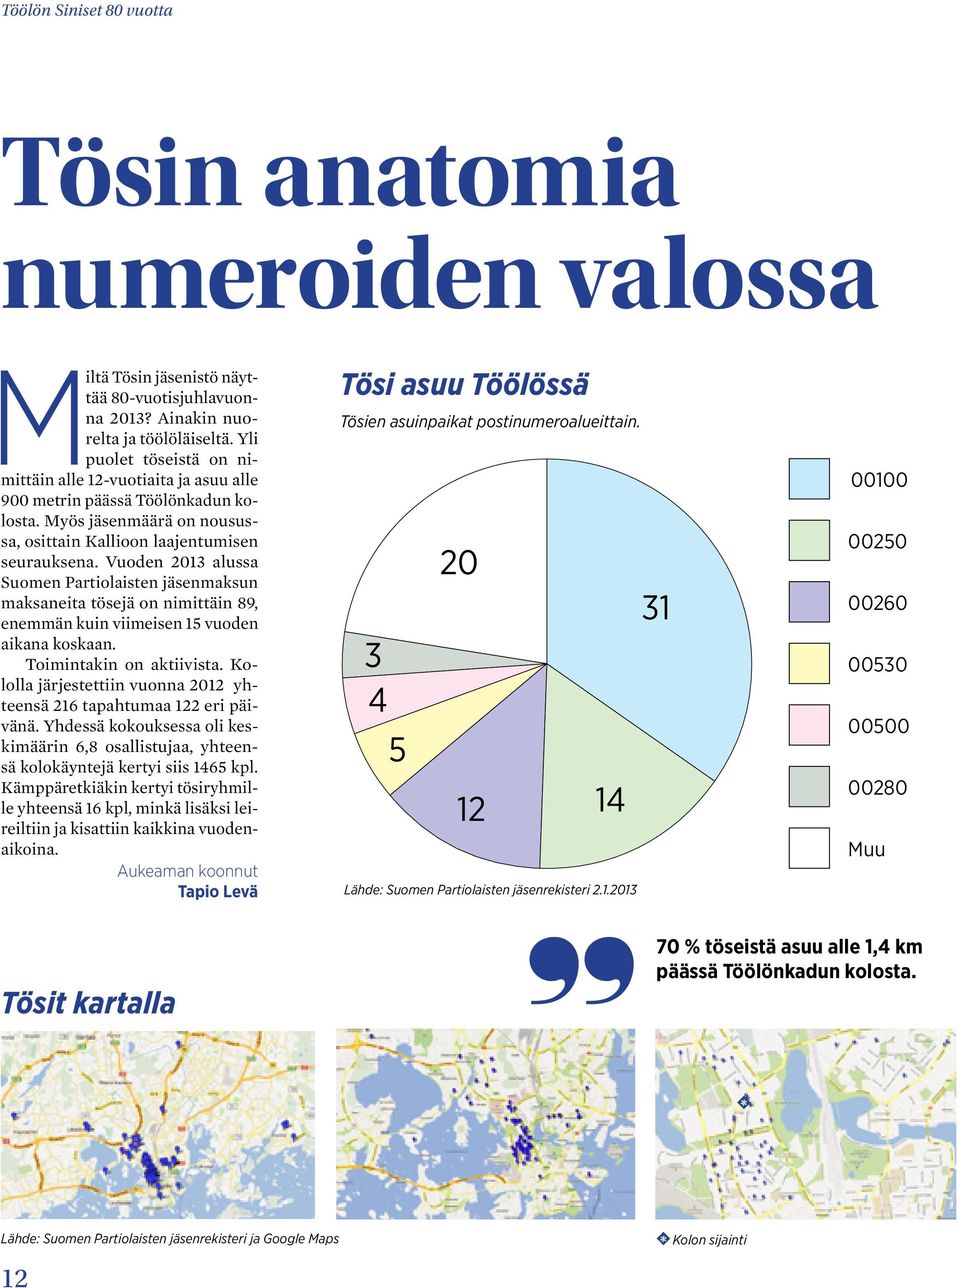 Vuoden 2013 alussa Suomen Partiolaisten jäsenmaksun maksaneita tösejä on nimittäin 89, enemmän kuin viimeisen 15 vuoden aikana koskaan. Toimintakin on aktiivista.